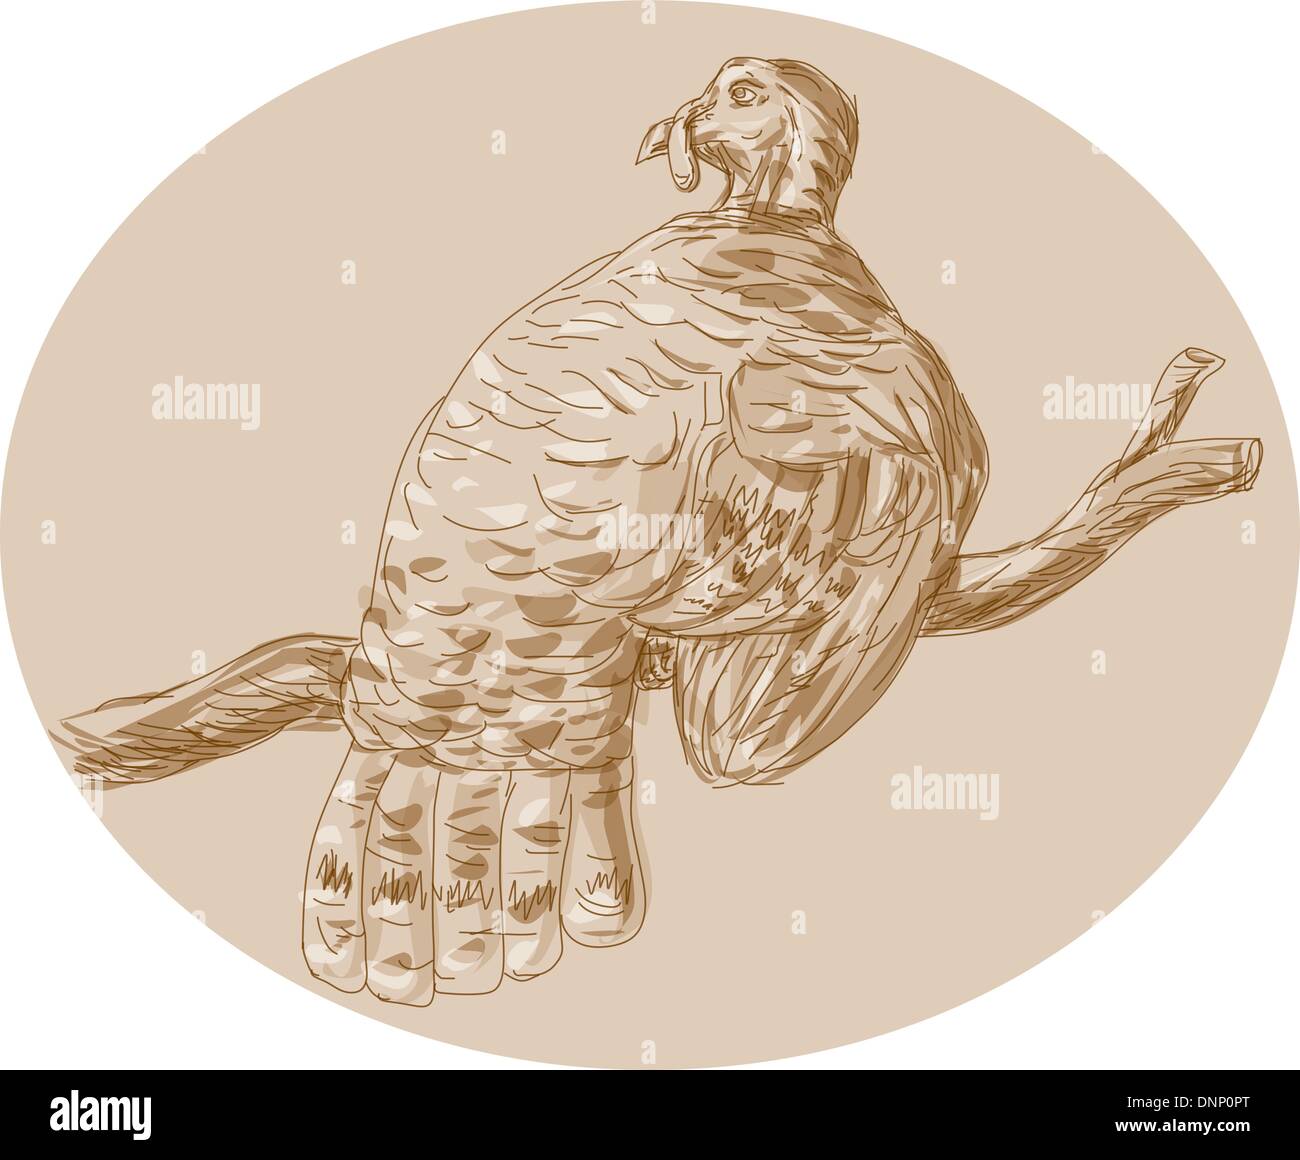 Croquis dessinés à la main, illustration d'un dindon sauvage perching on branch vu de l'arrière. Illustration de Vecteur